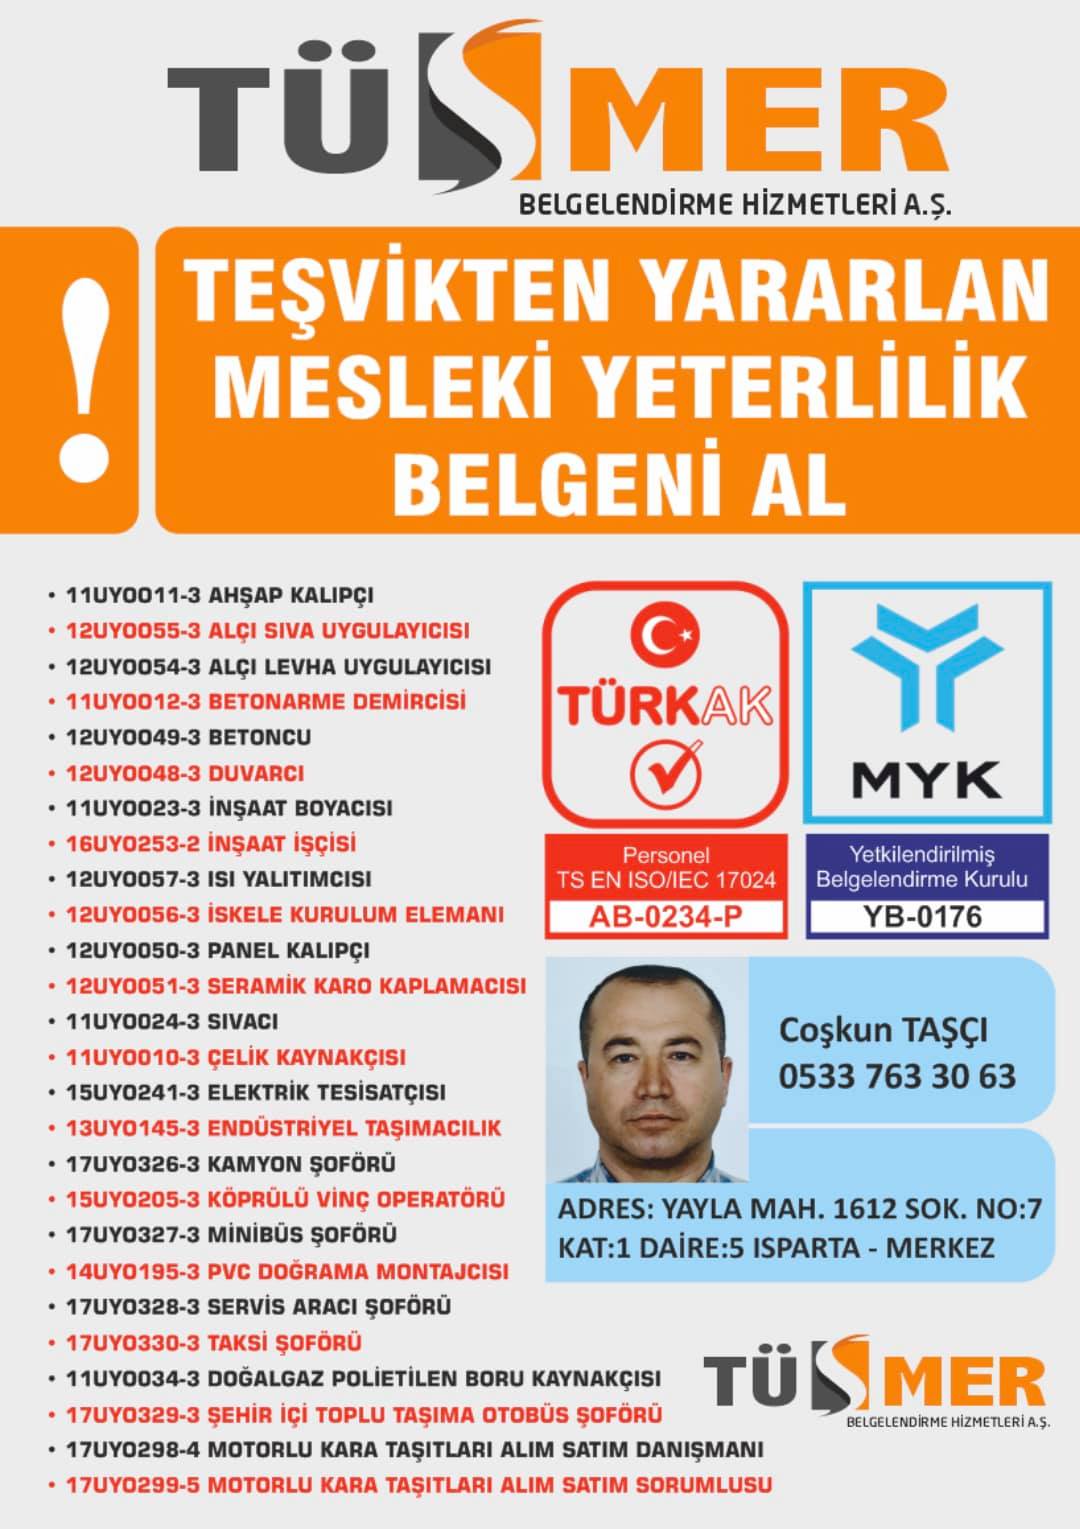 MYK MESLEKİ YETERLİLİK BELGESİ Muratpaşa Antalya